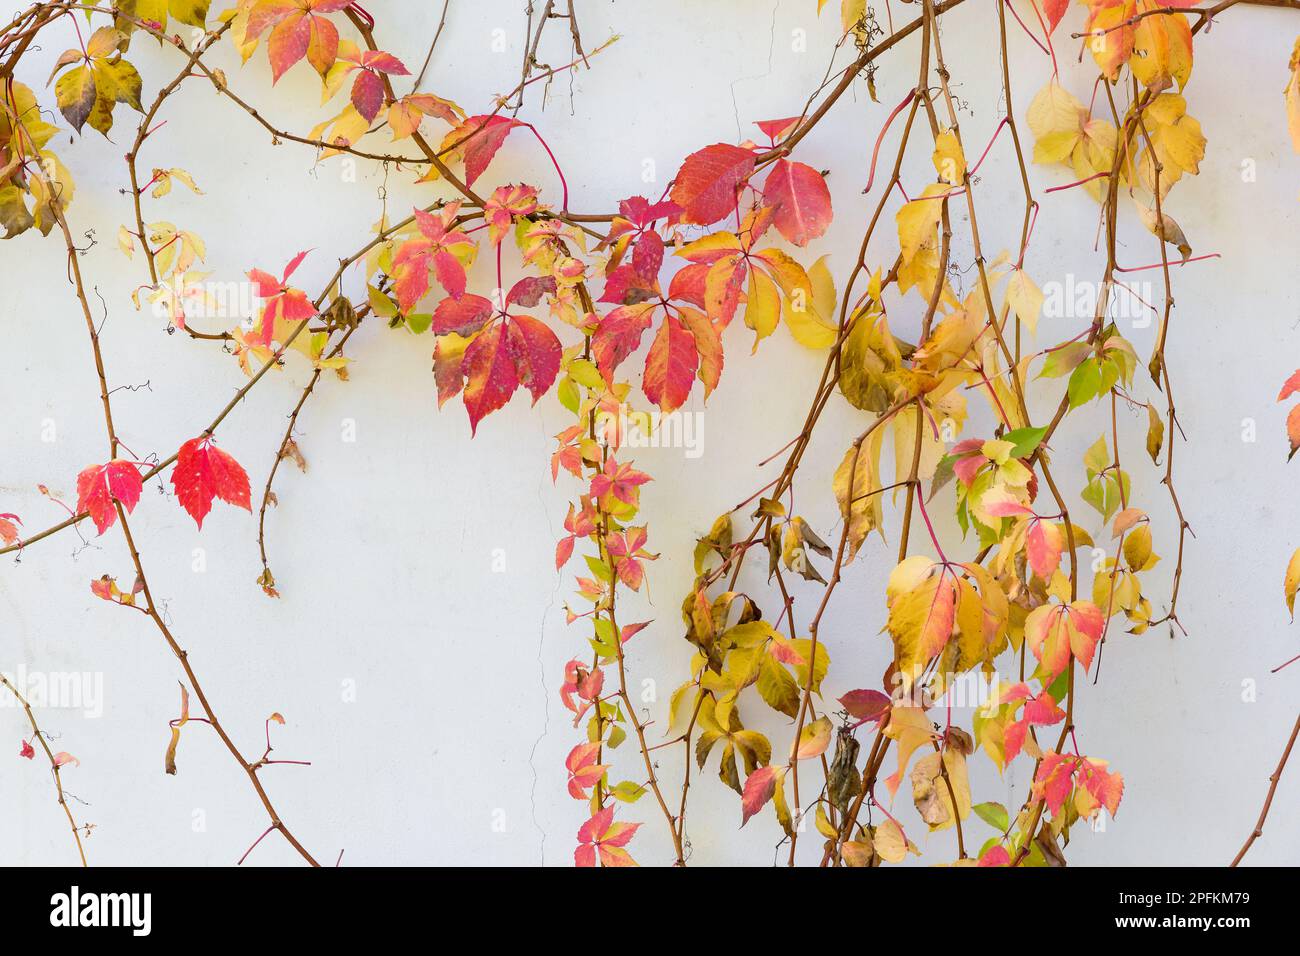 bella immagine di sfondo di tendri di vite autunnally colorato su una parete di casa Foto Stock